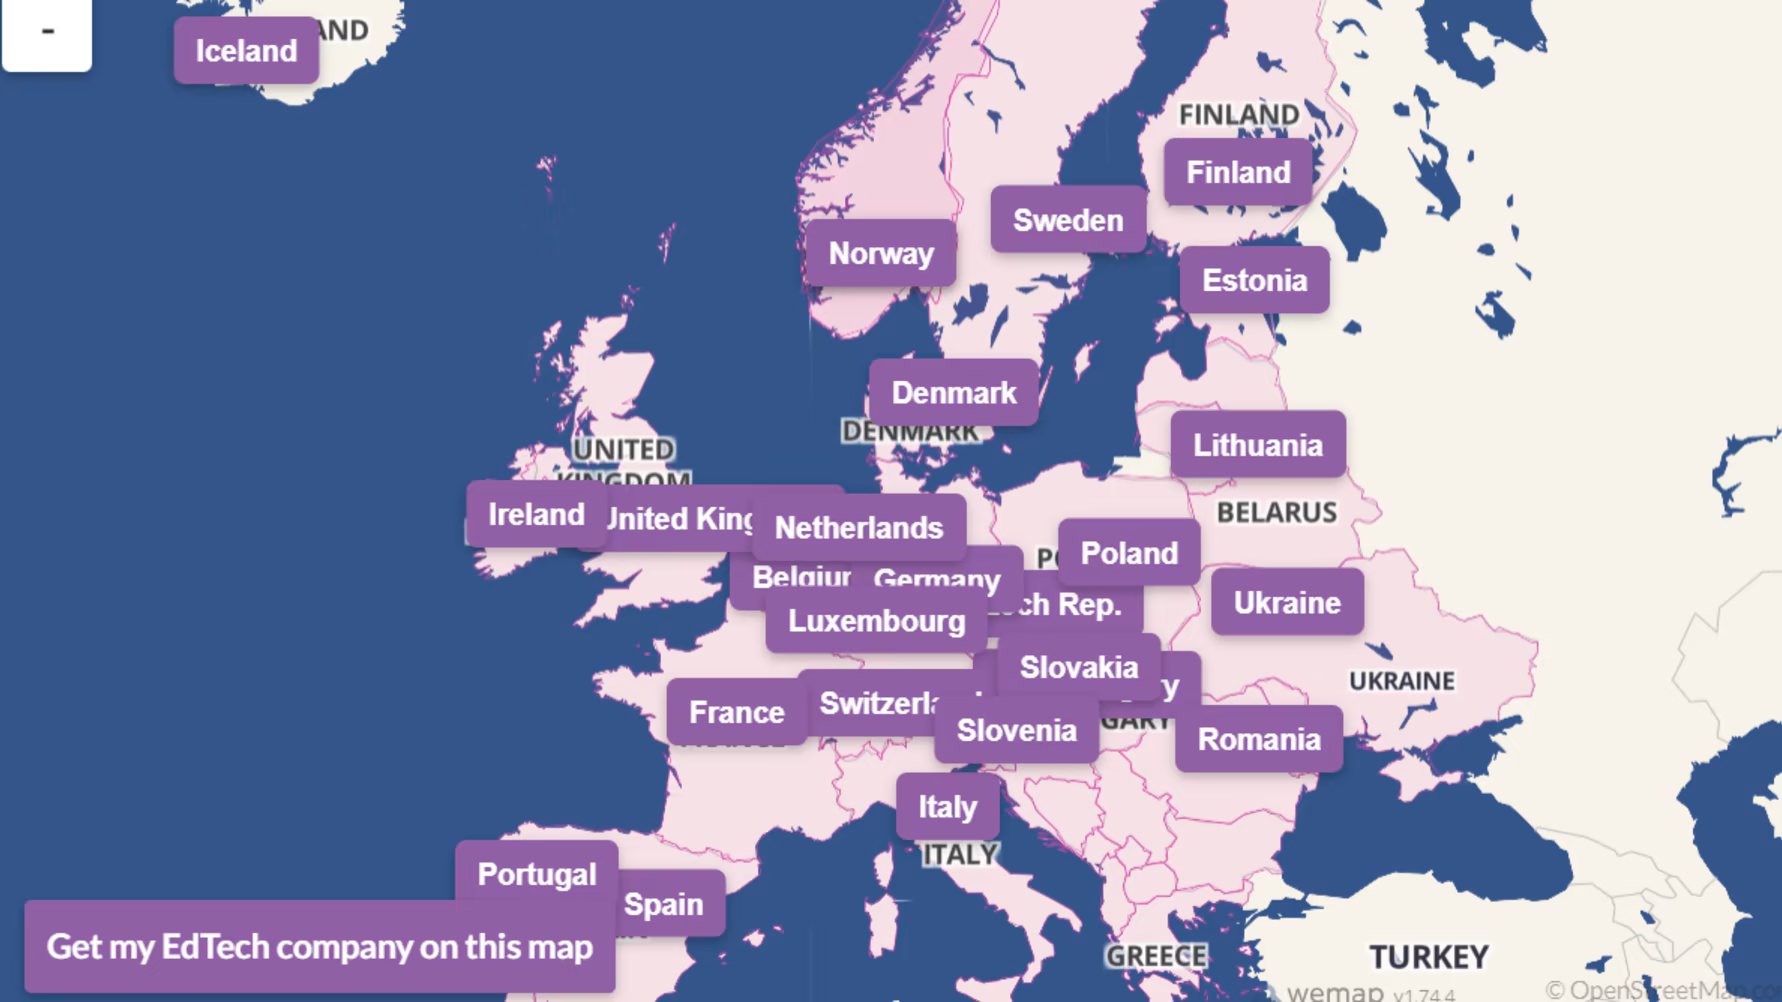 Lansering: Redan över 1000 edtechföretag på Europas första edtechkarta